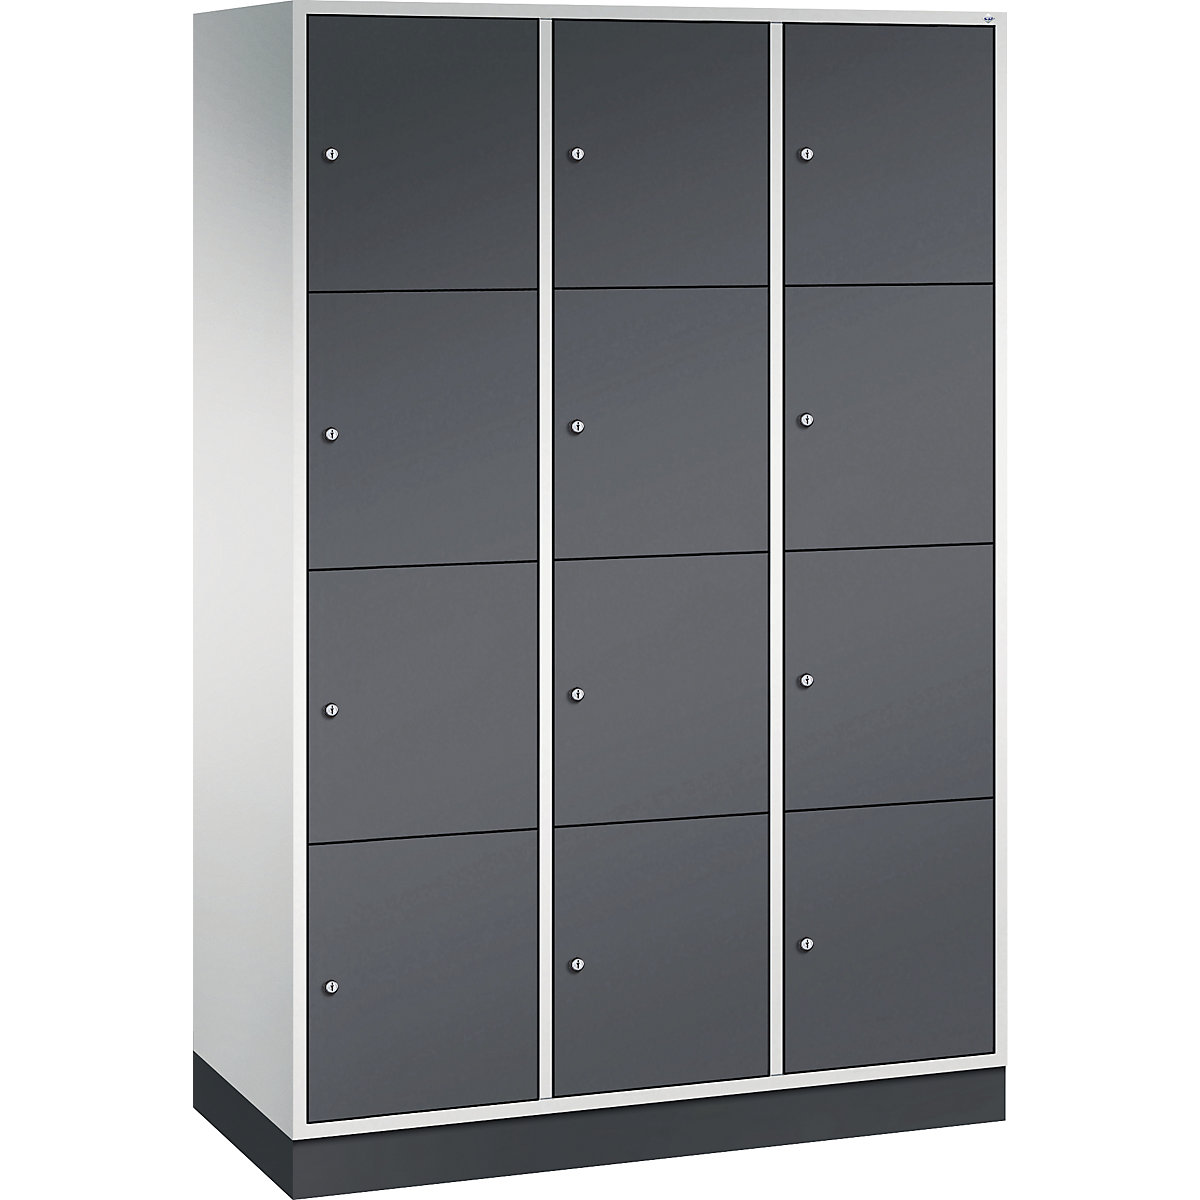 Vestiaire multicases en acier INTRO, casiers hauteur 435 mm – C+P, l x p 1220 x 500 mm, 12 casiers, corps gris clair, portes gris noir-7